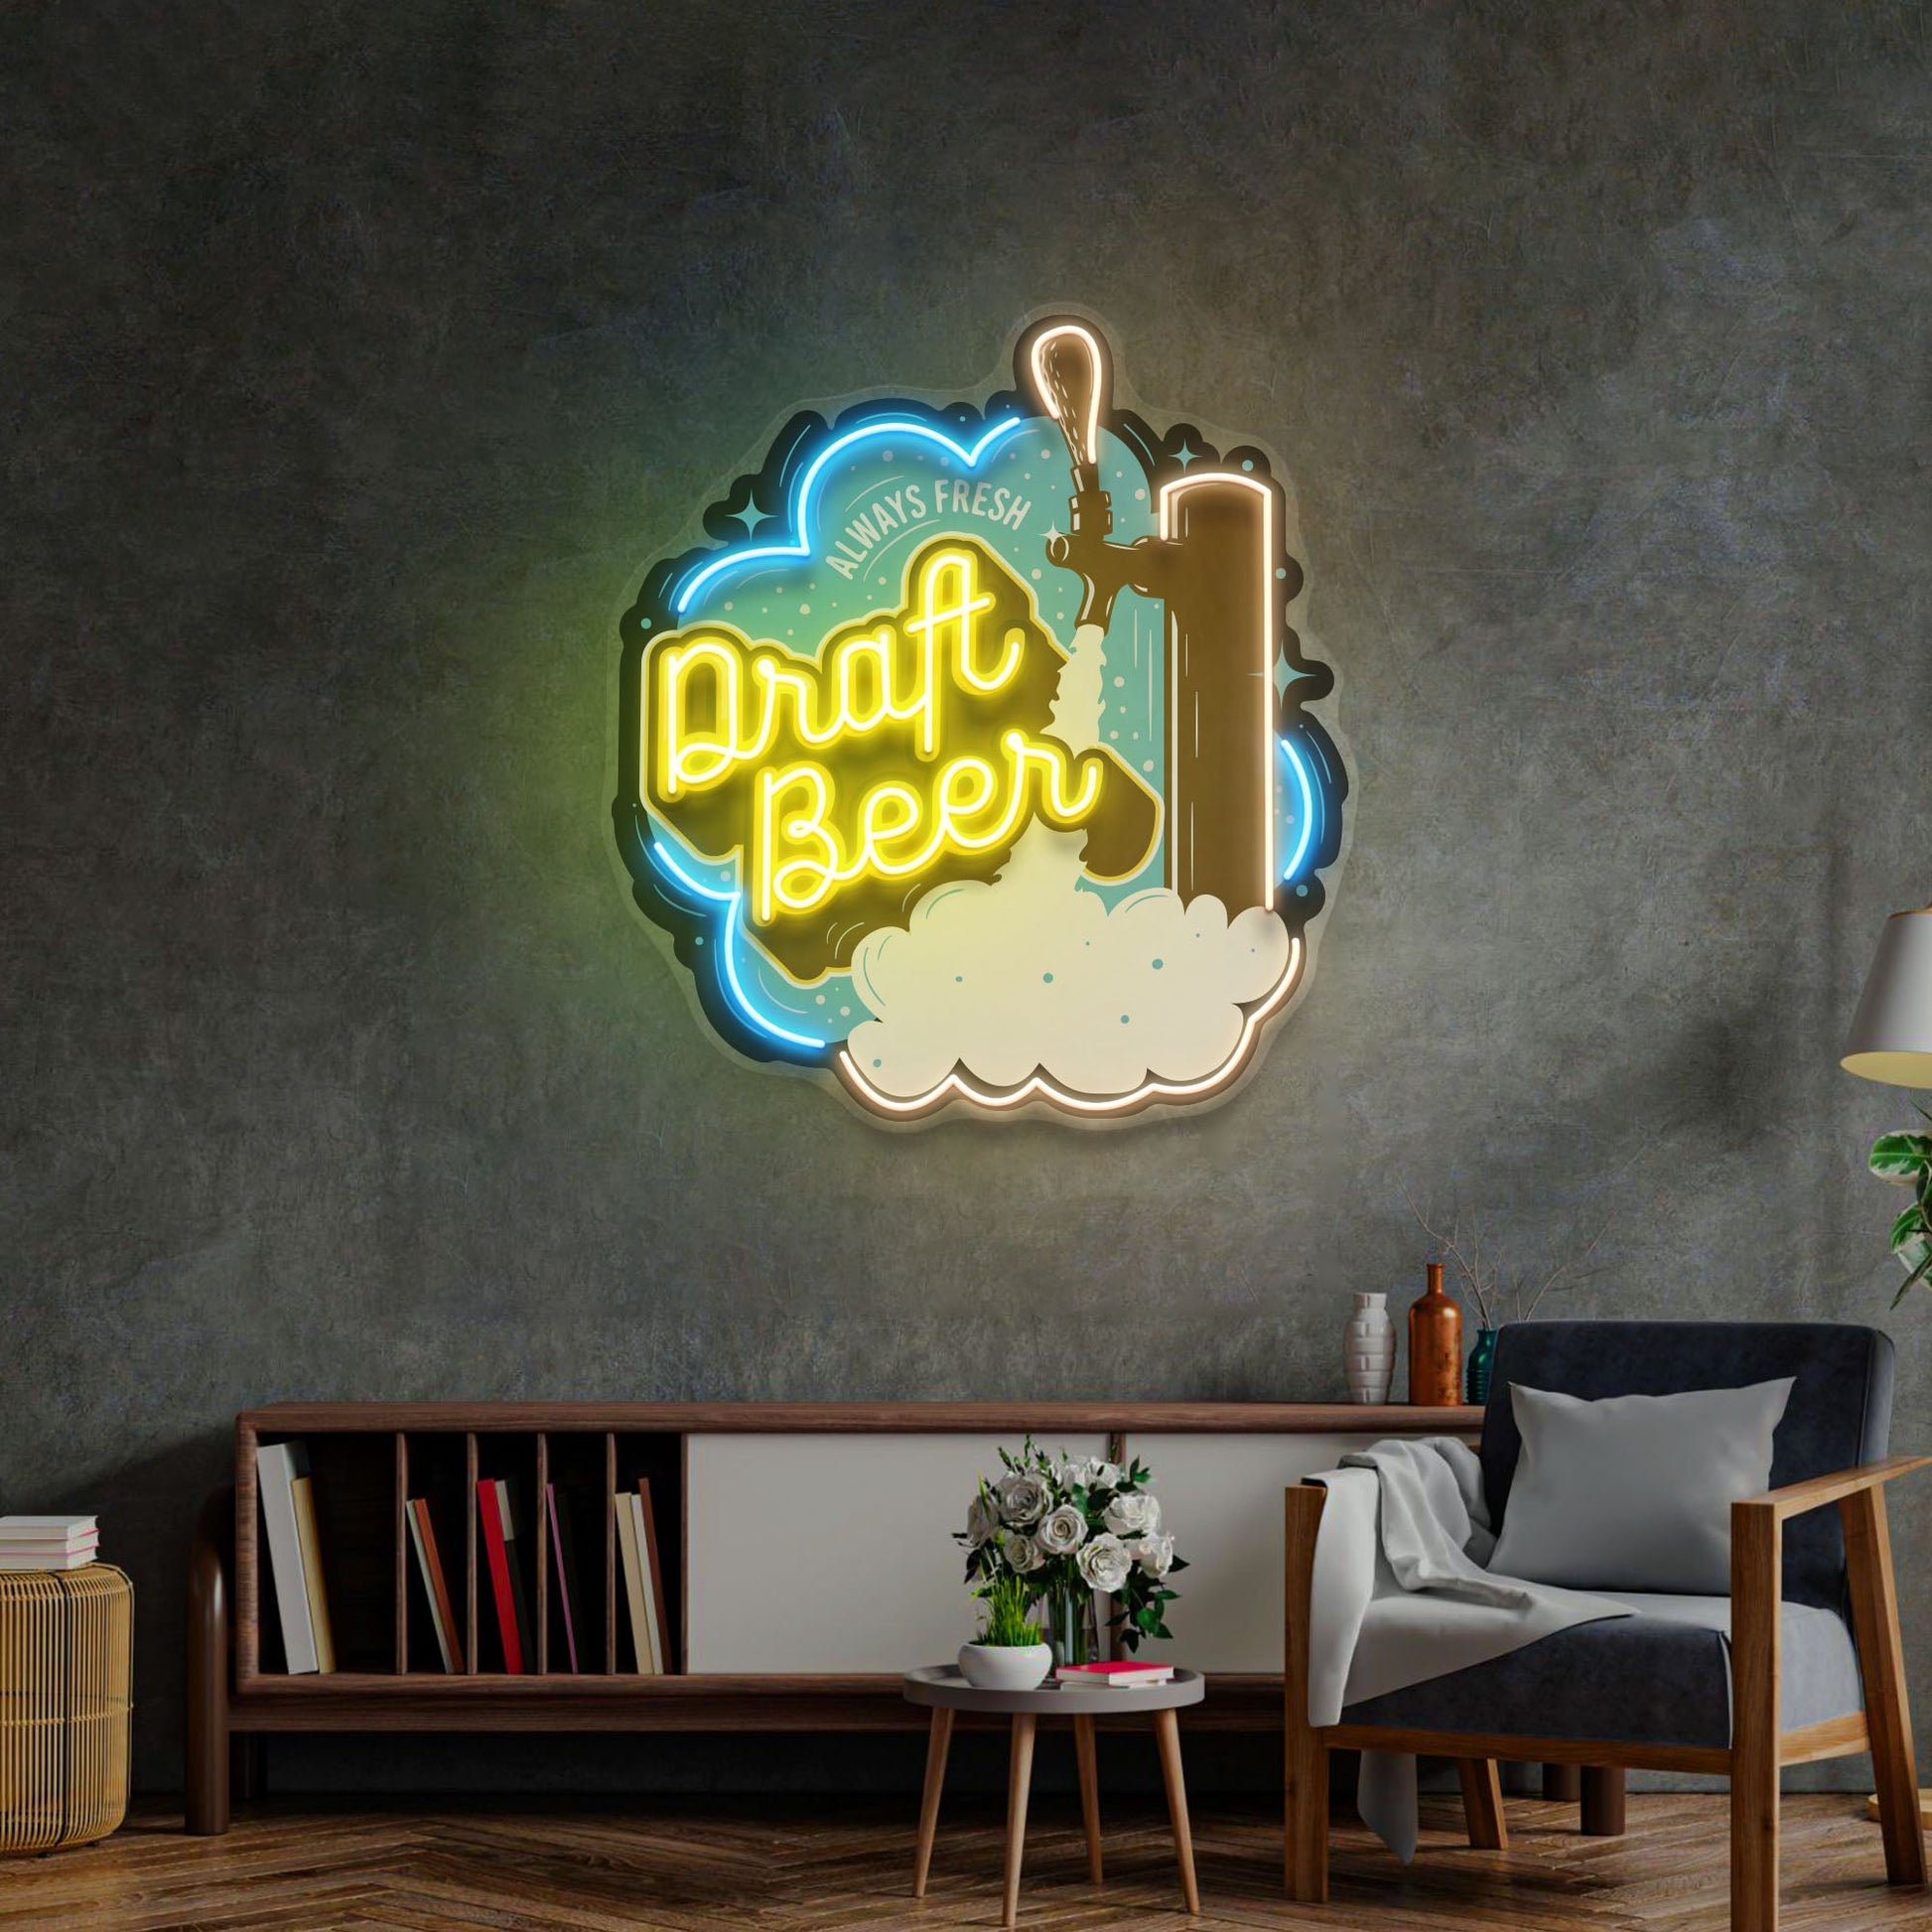 Draft Beer LED Neon Sign Light Pop Art - Neonzastudio